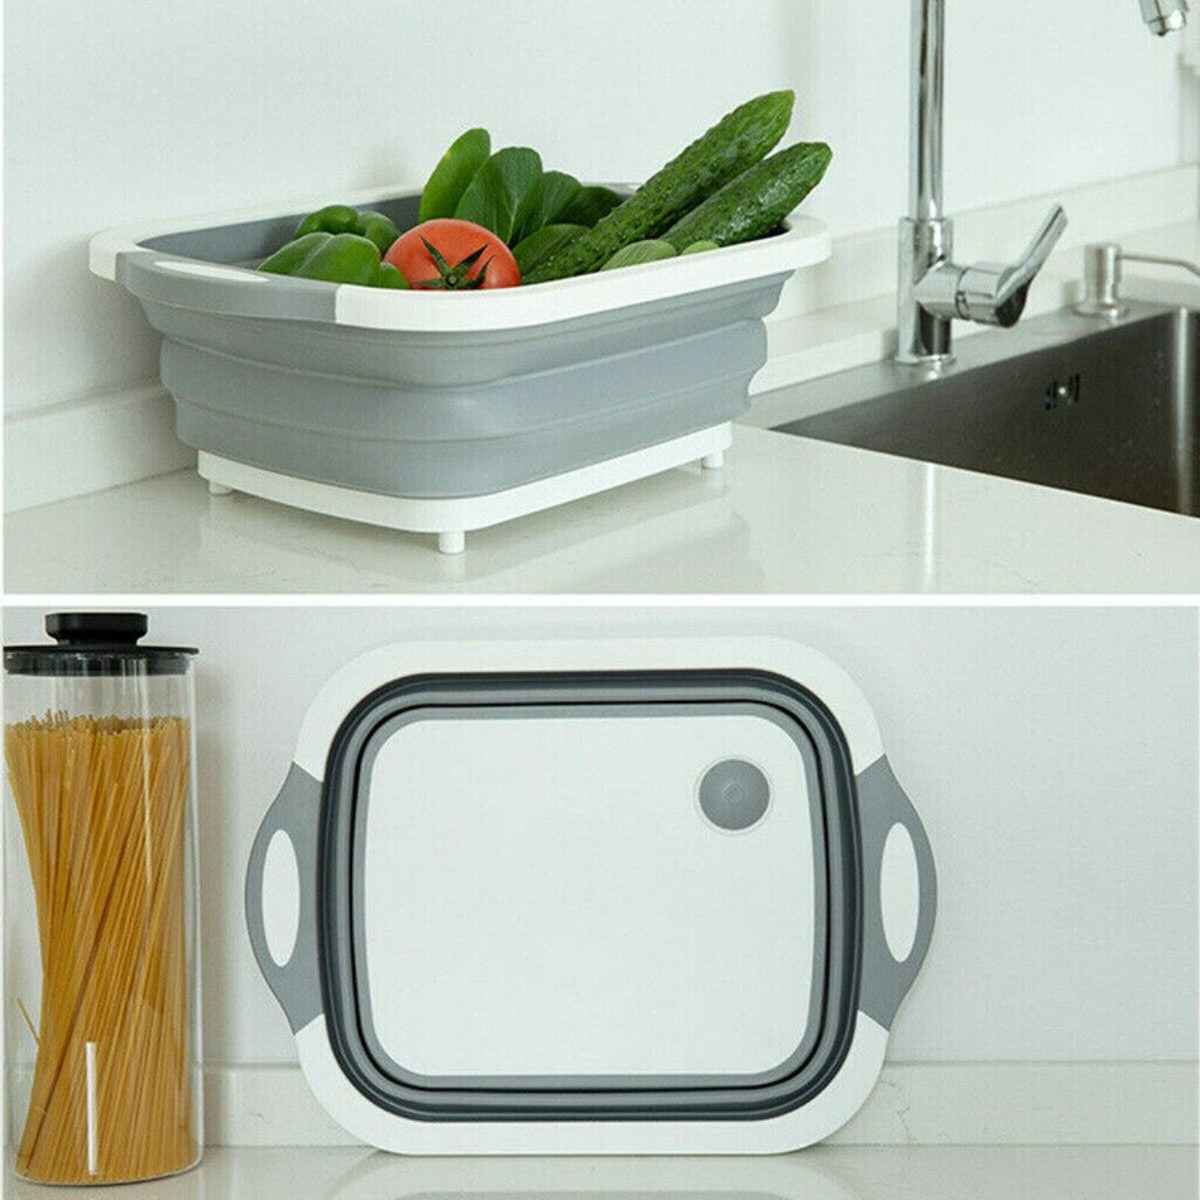 4-in-1-Foldable-Multifunctional-Board-Tool-Fruit-Vegetables-Sink-Drain-Storage-Basket-1523907-6